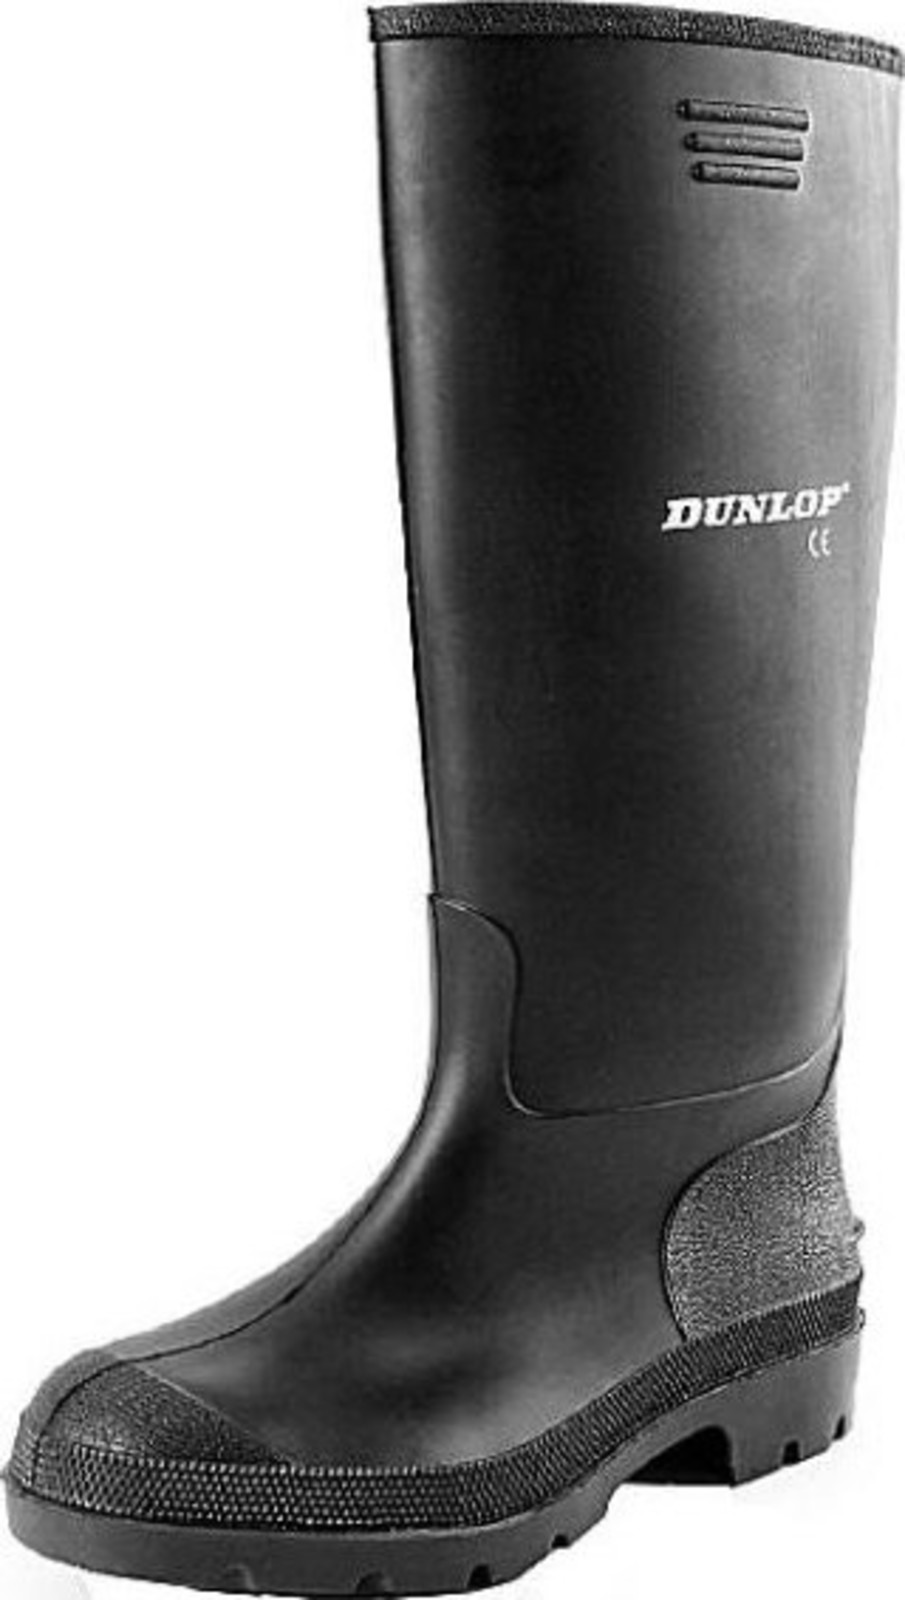 Gumáky Dunlop Preismeister PVC - veľkosť: 48, farba: čierna